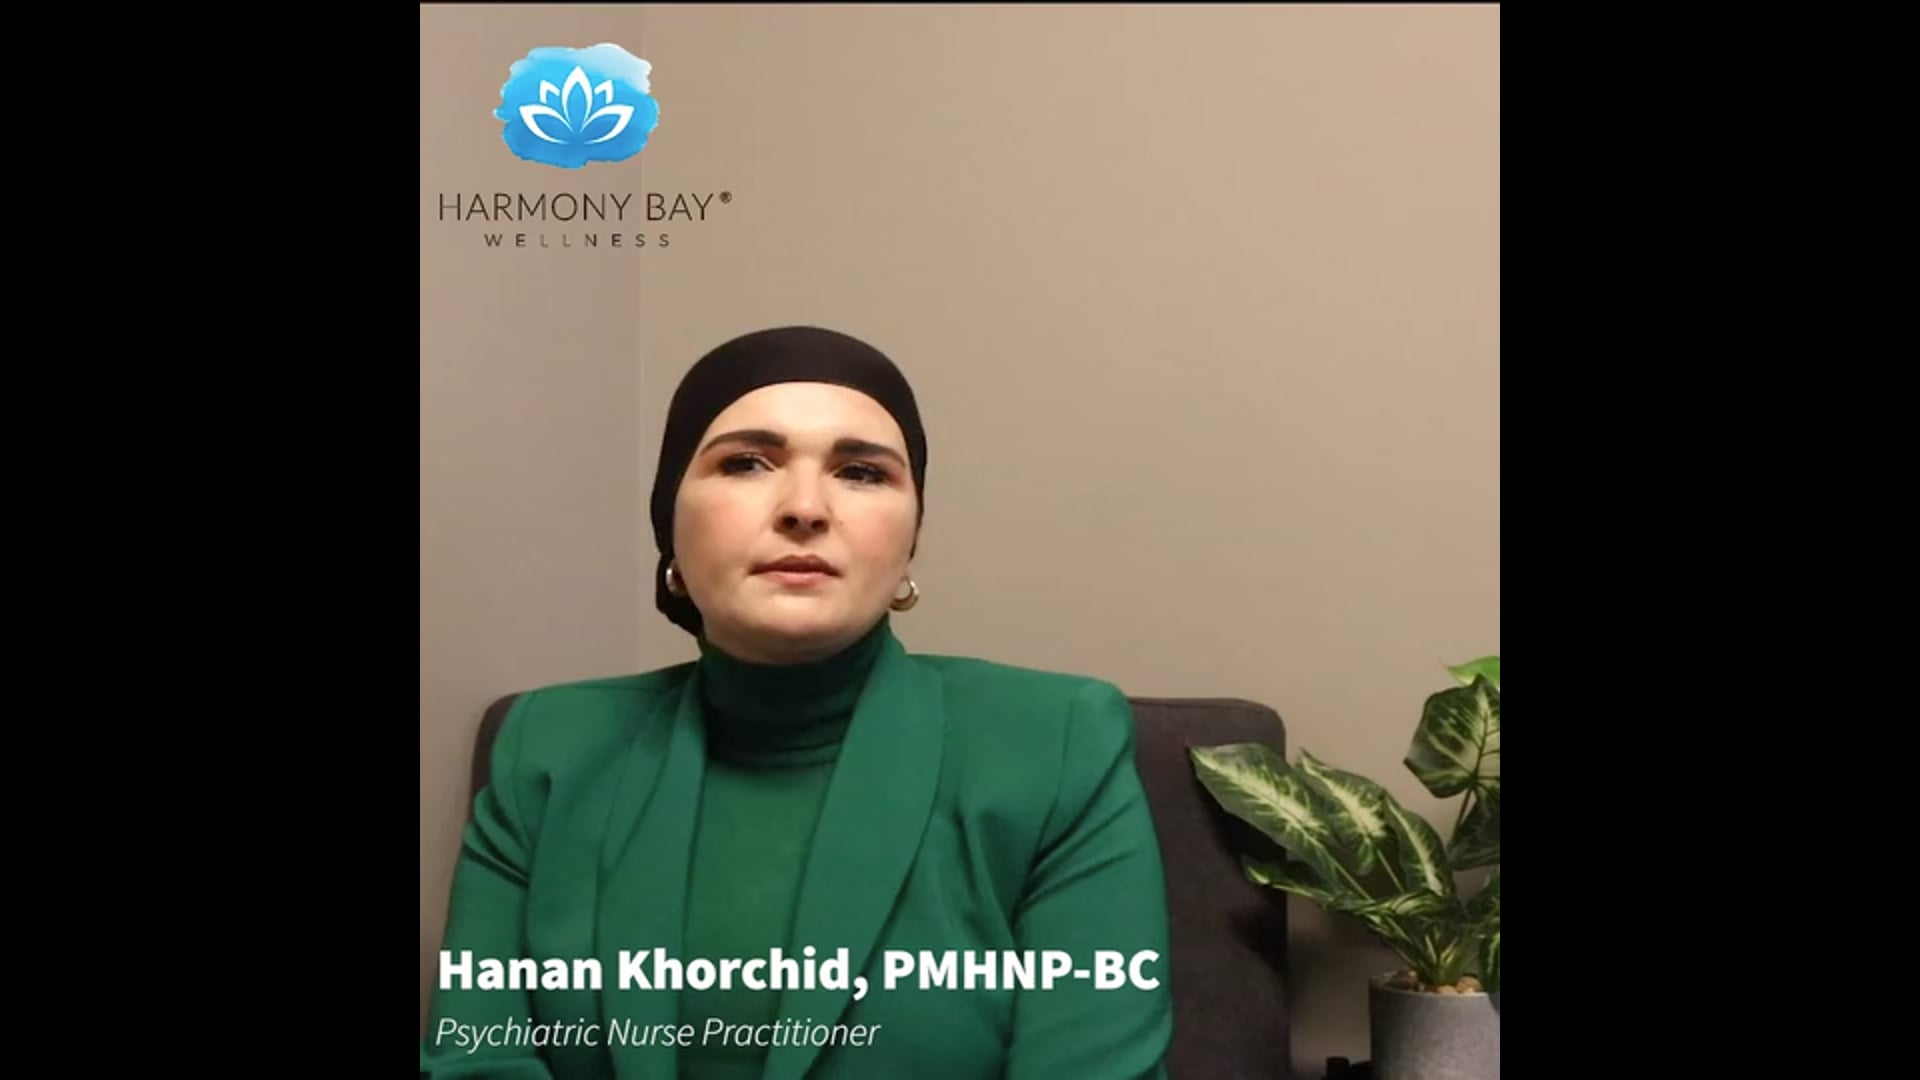 Hanan Khorchid